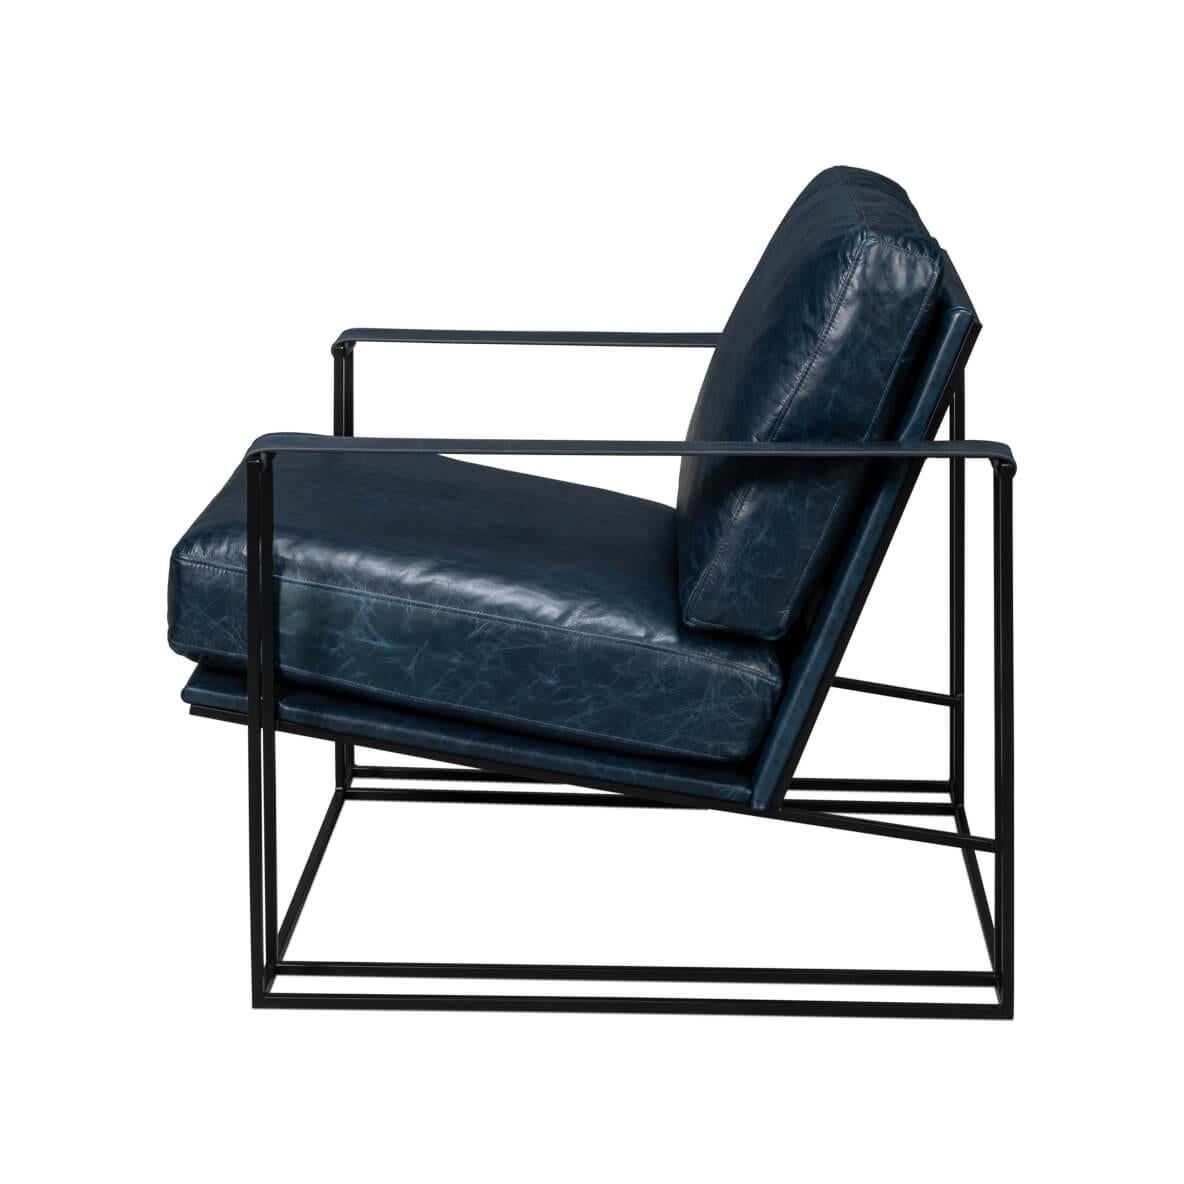 Der mit hochwertigem Chateau Blue-Leder gepolsterte Stuhl ist ein Highlight, das jedem Raum einen modernen Touch verleiht. Sein einzigartiger doppelter Eisenrahmen bietet nicht nur robusten Halt, sondern trägt auch zu seinem schlanken und eleganten